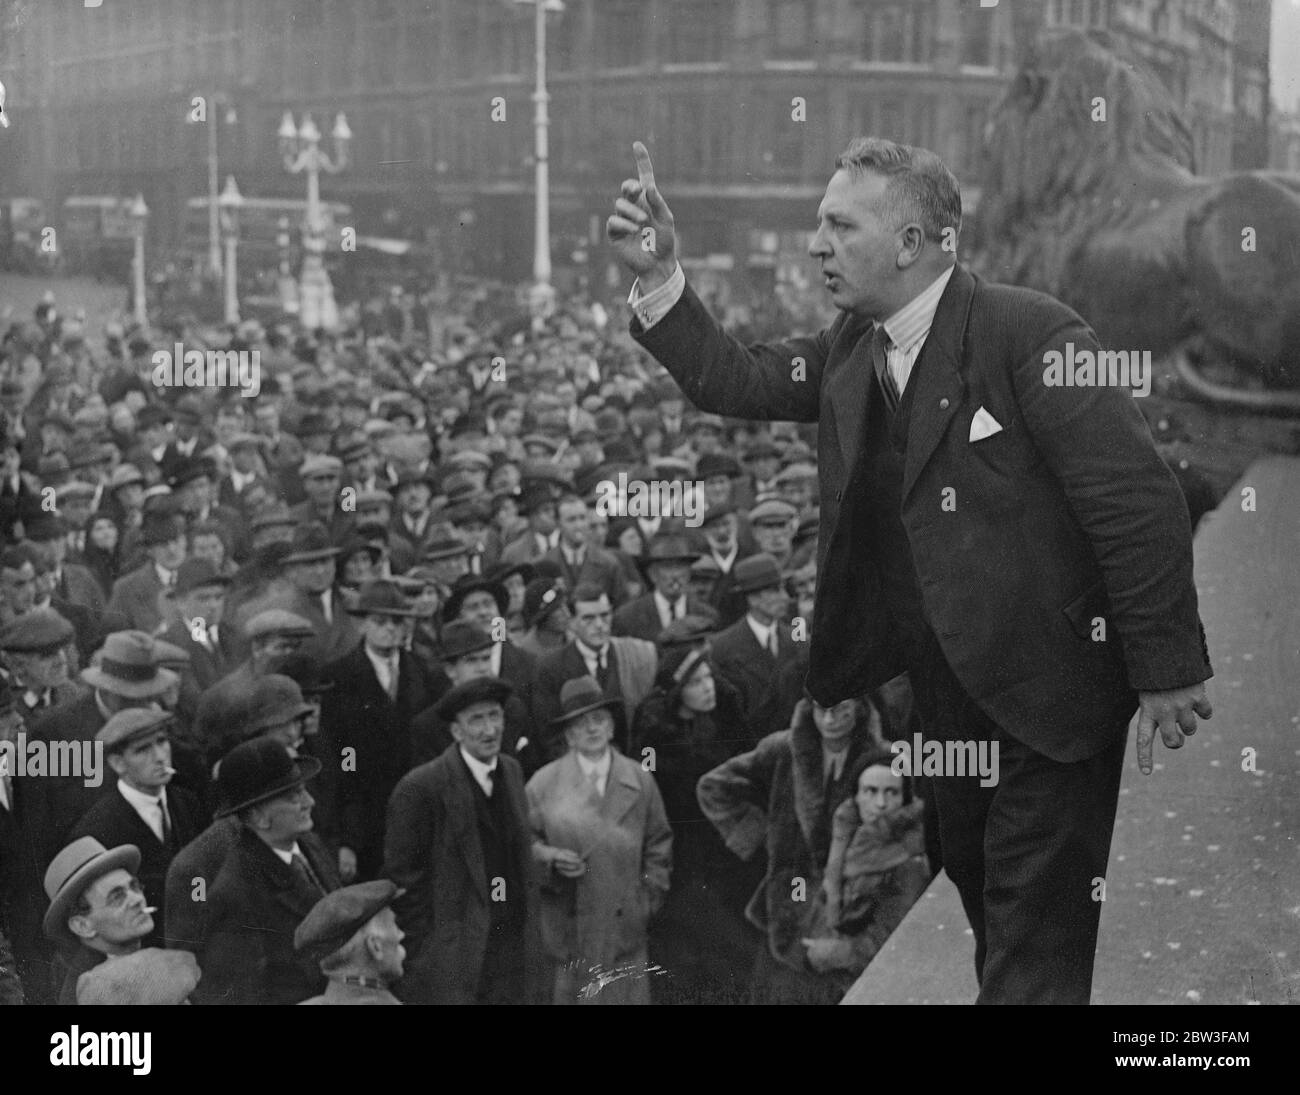 Alle Parteien vereinen sich auf dem Trafalgar Square, um gegen die Aufwiegelung der Regierung zu demonstrieren. 27 März 1934 Stockfoto